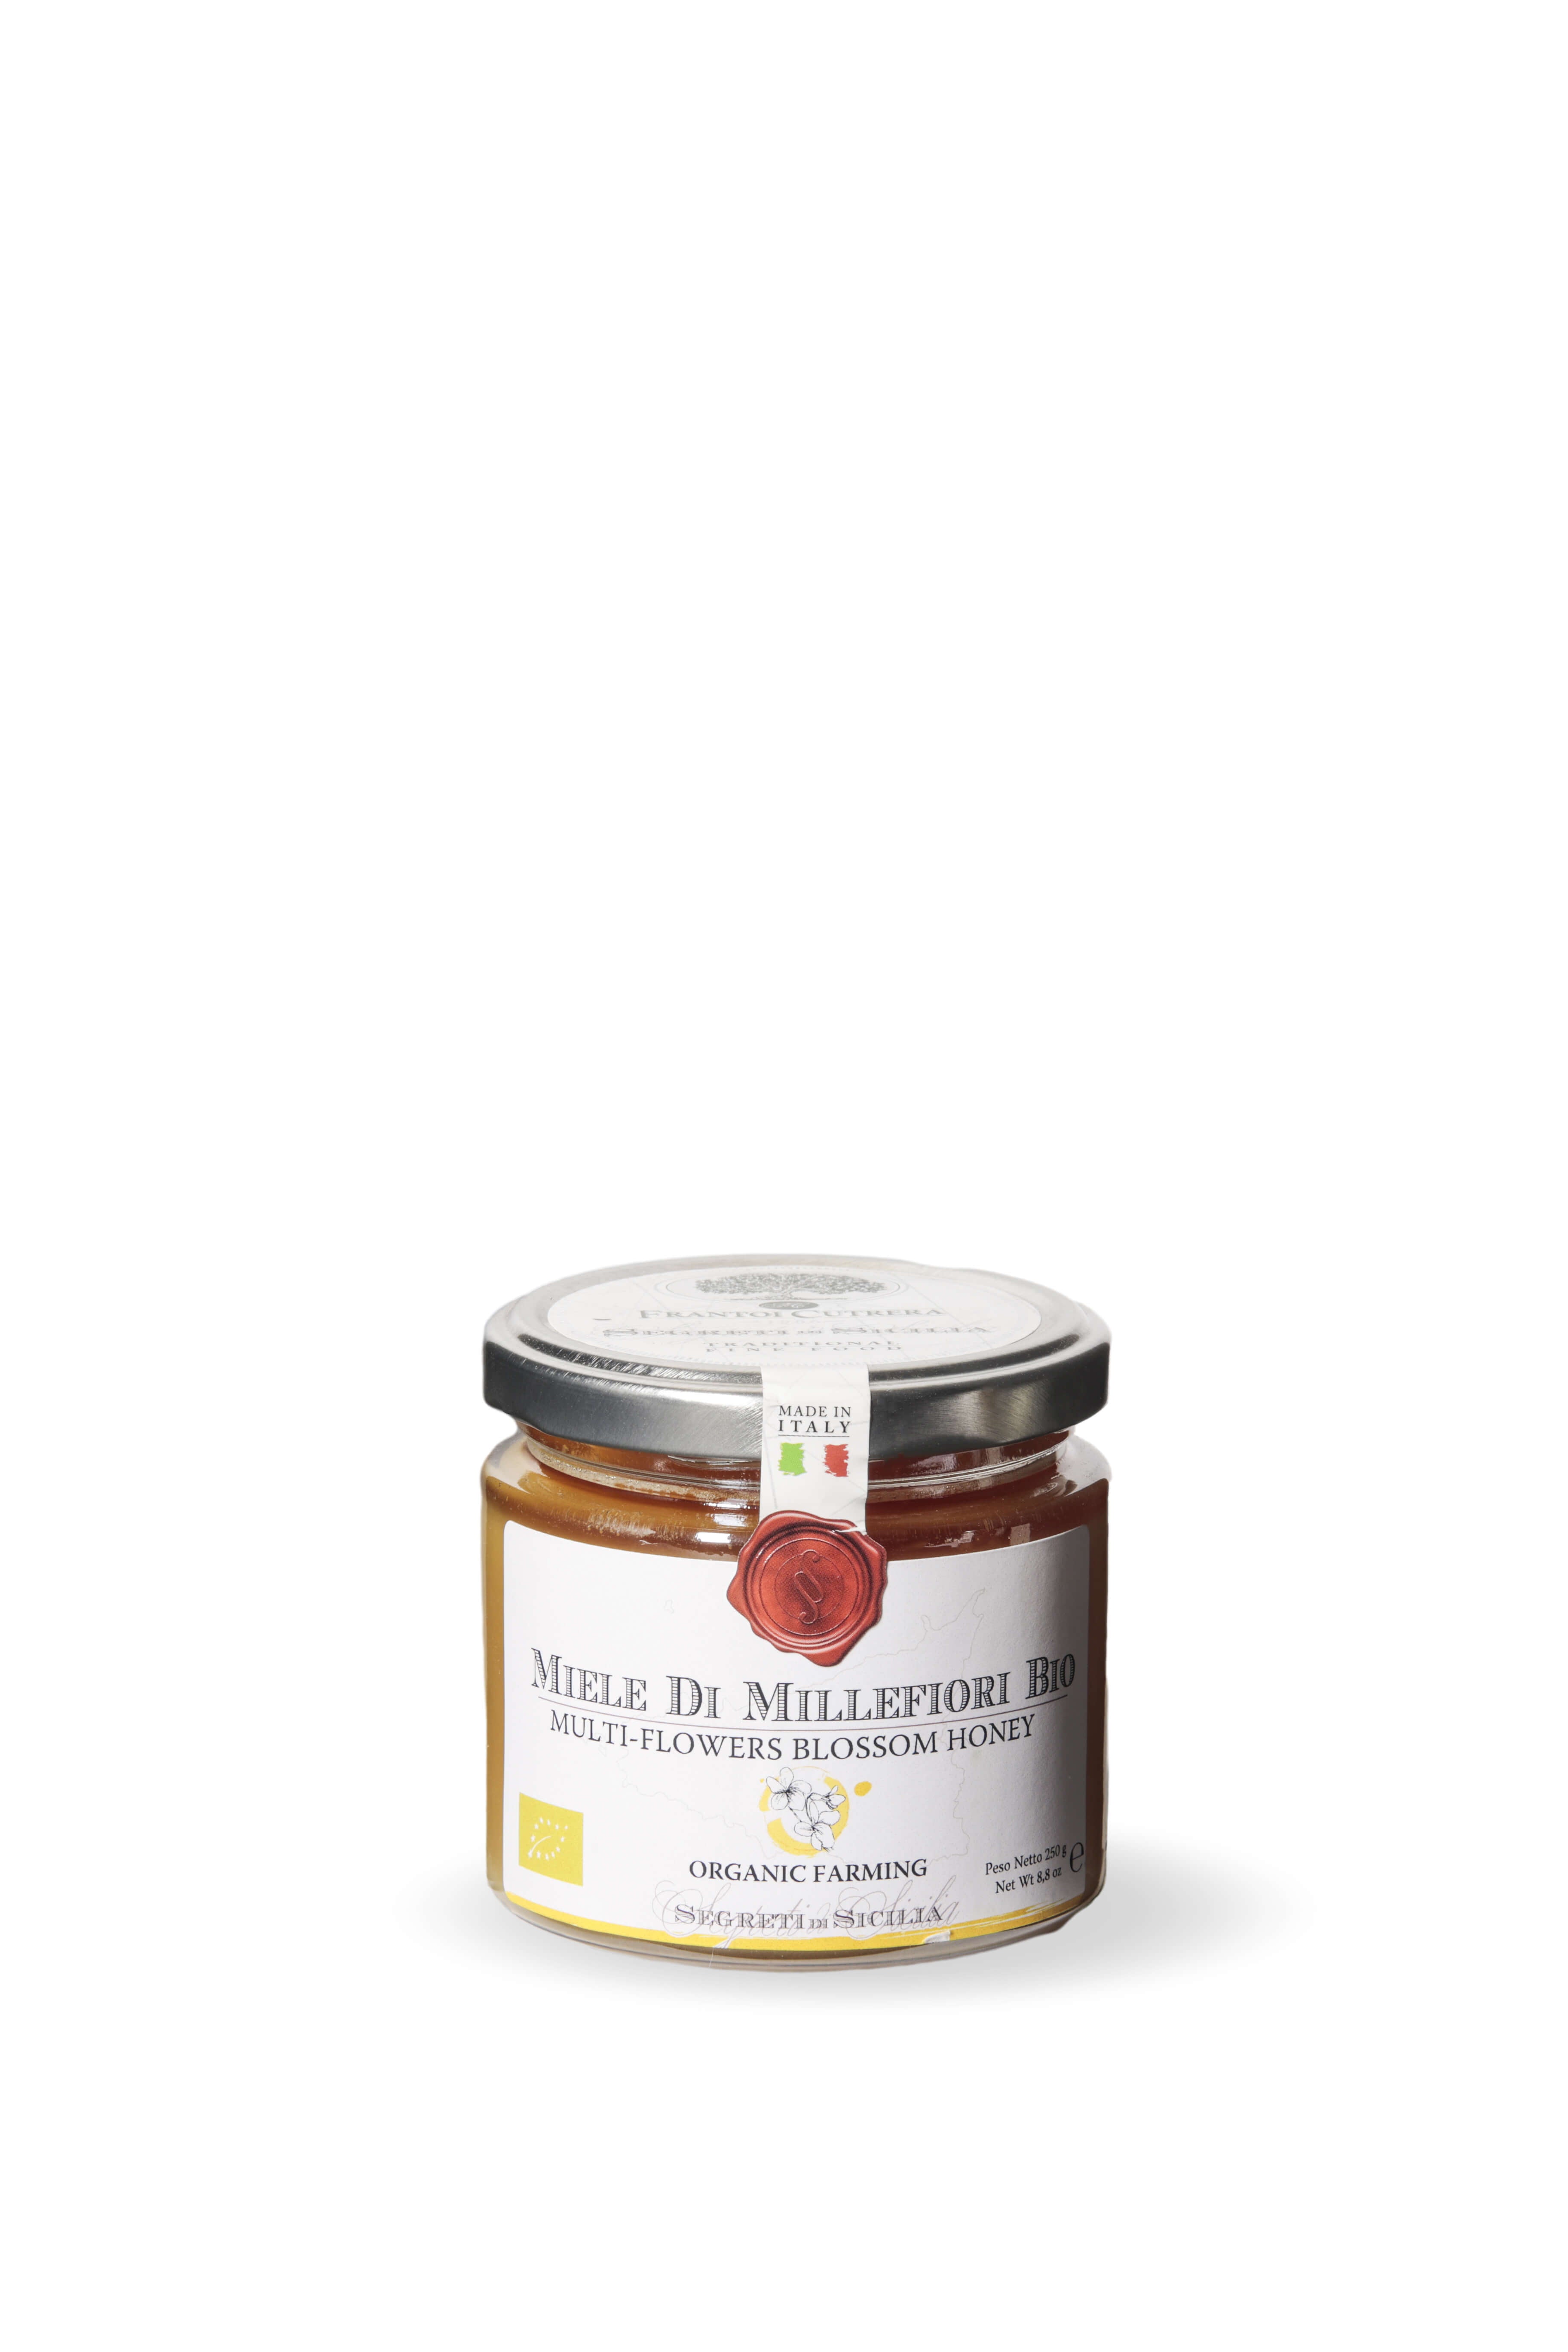 ORGANIC Sicilian Millefiori honey